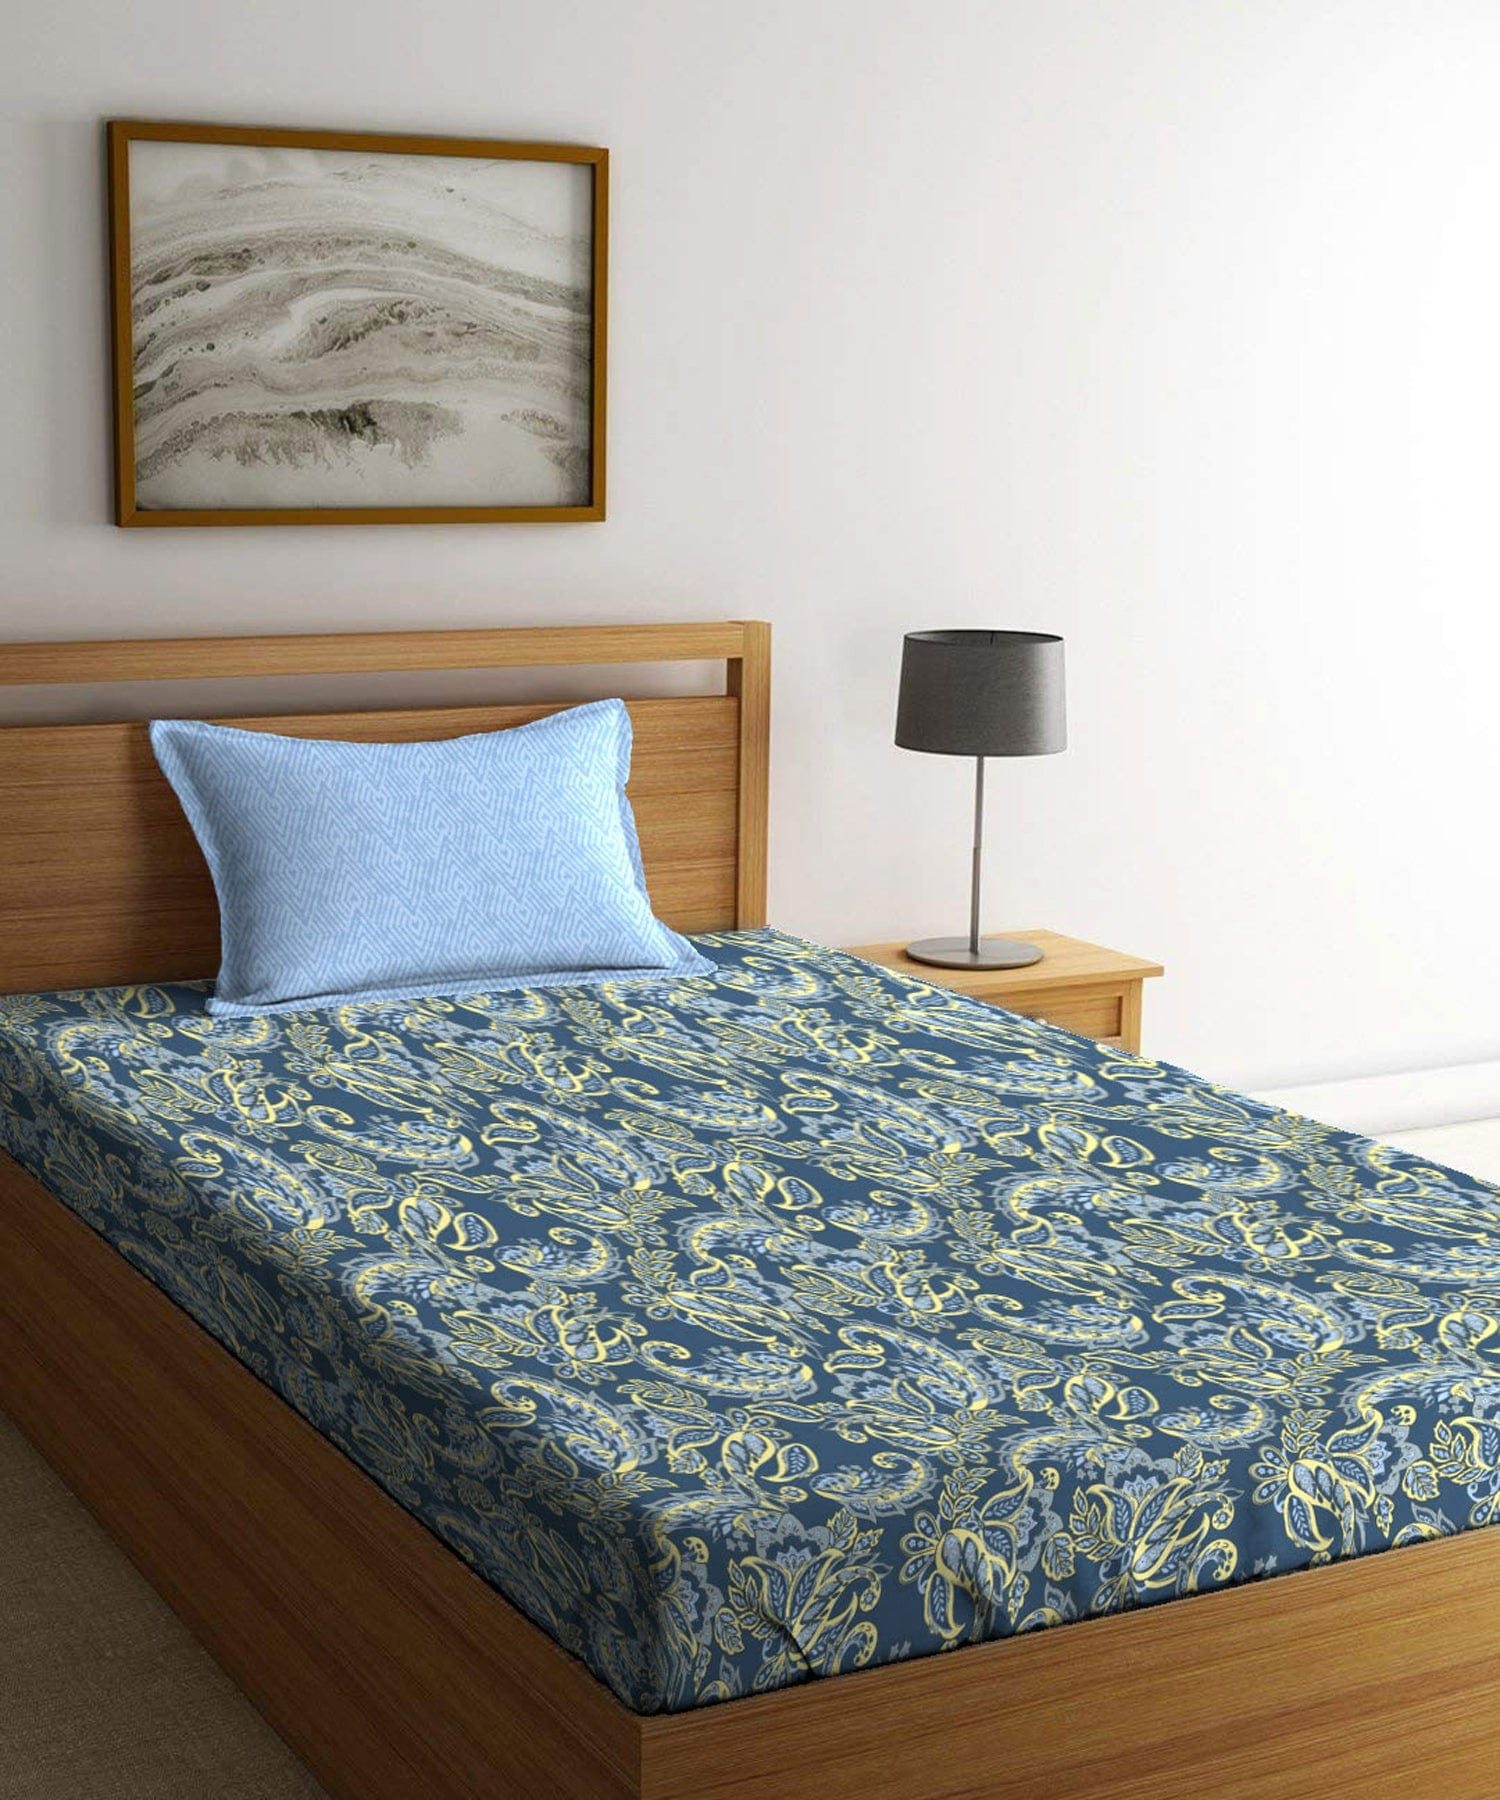 Single Bedsheet ₹629/-